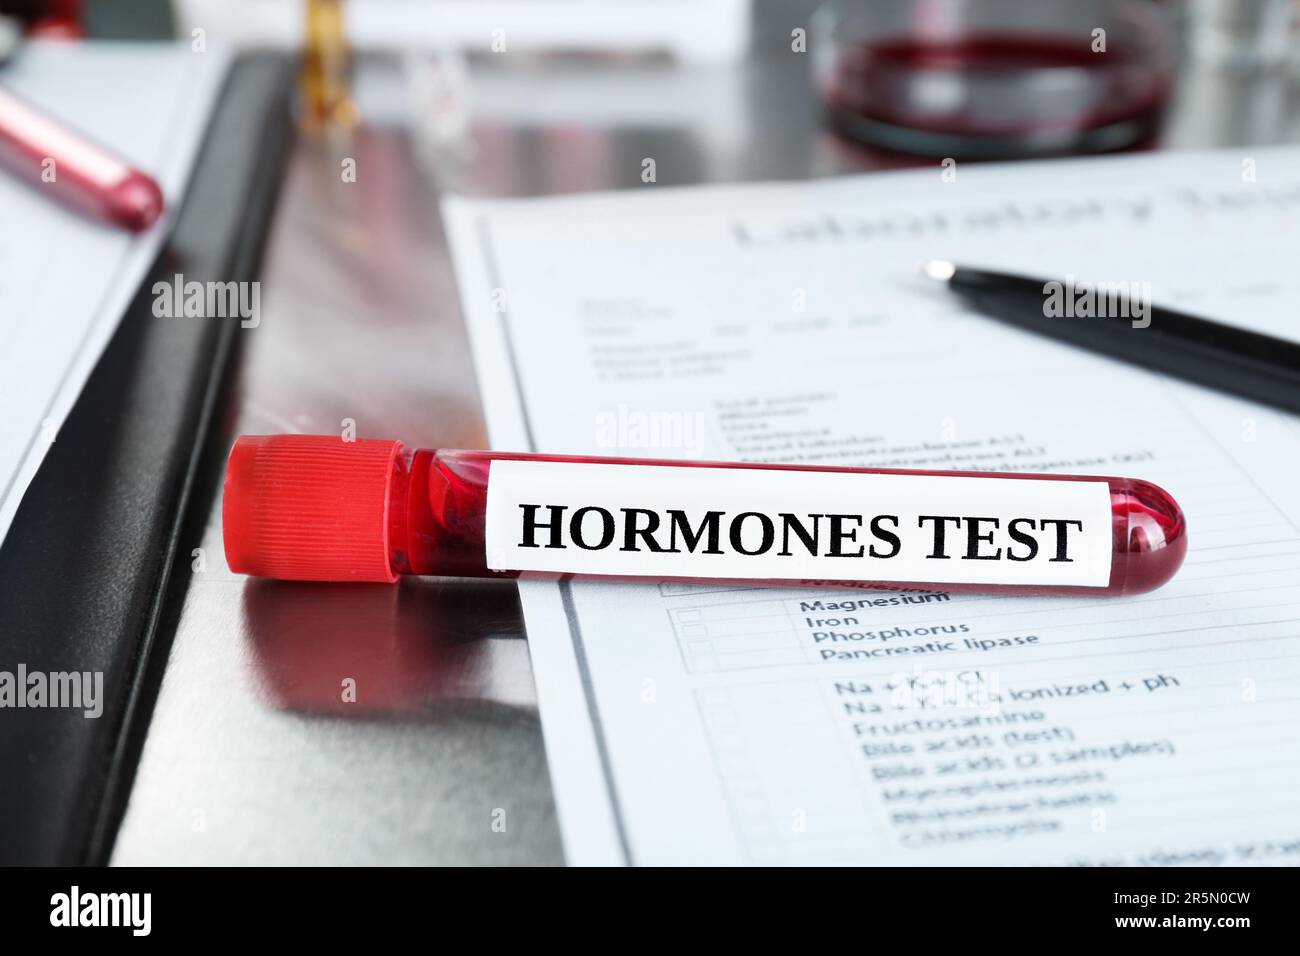 Glasröhrchen mit Blutprobe und Etikett Hormone Test auf einem Metalltisch Stockfoto